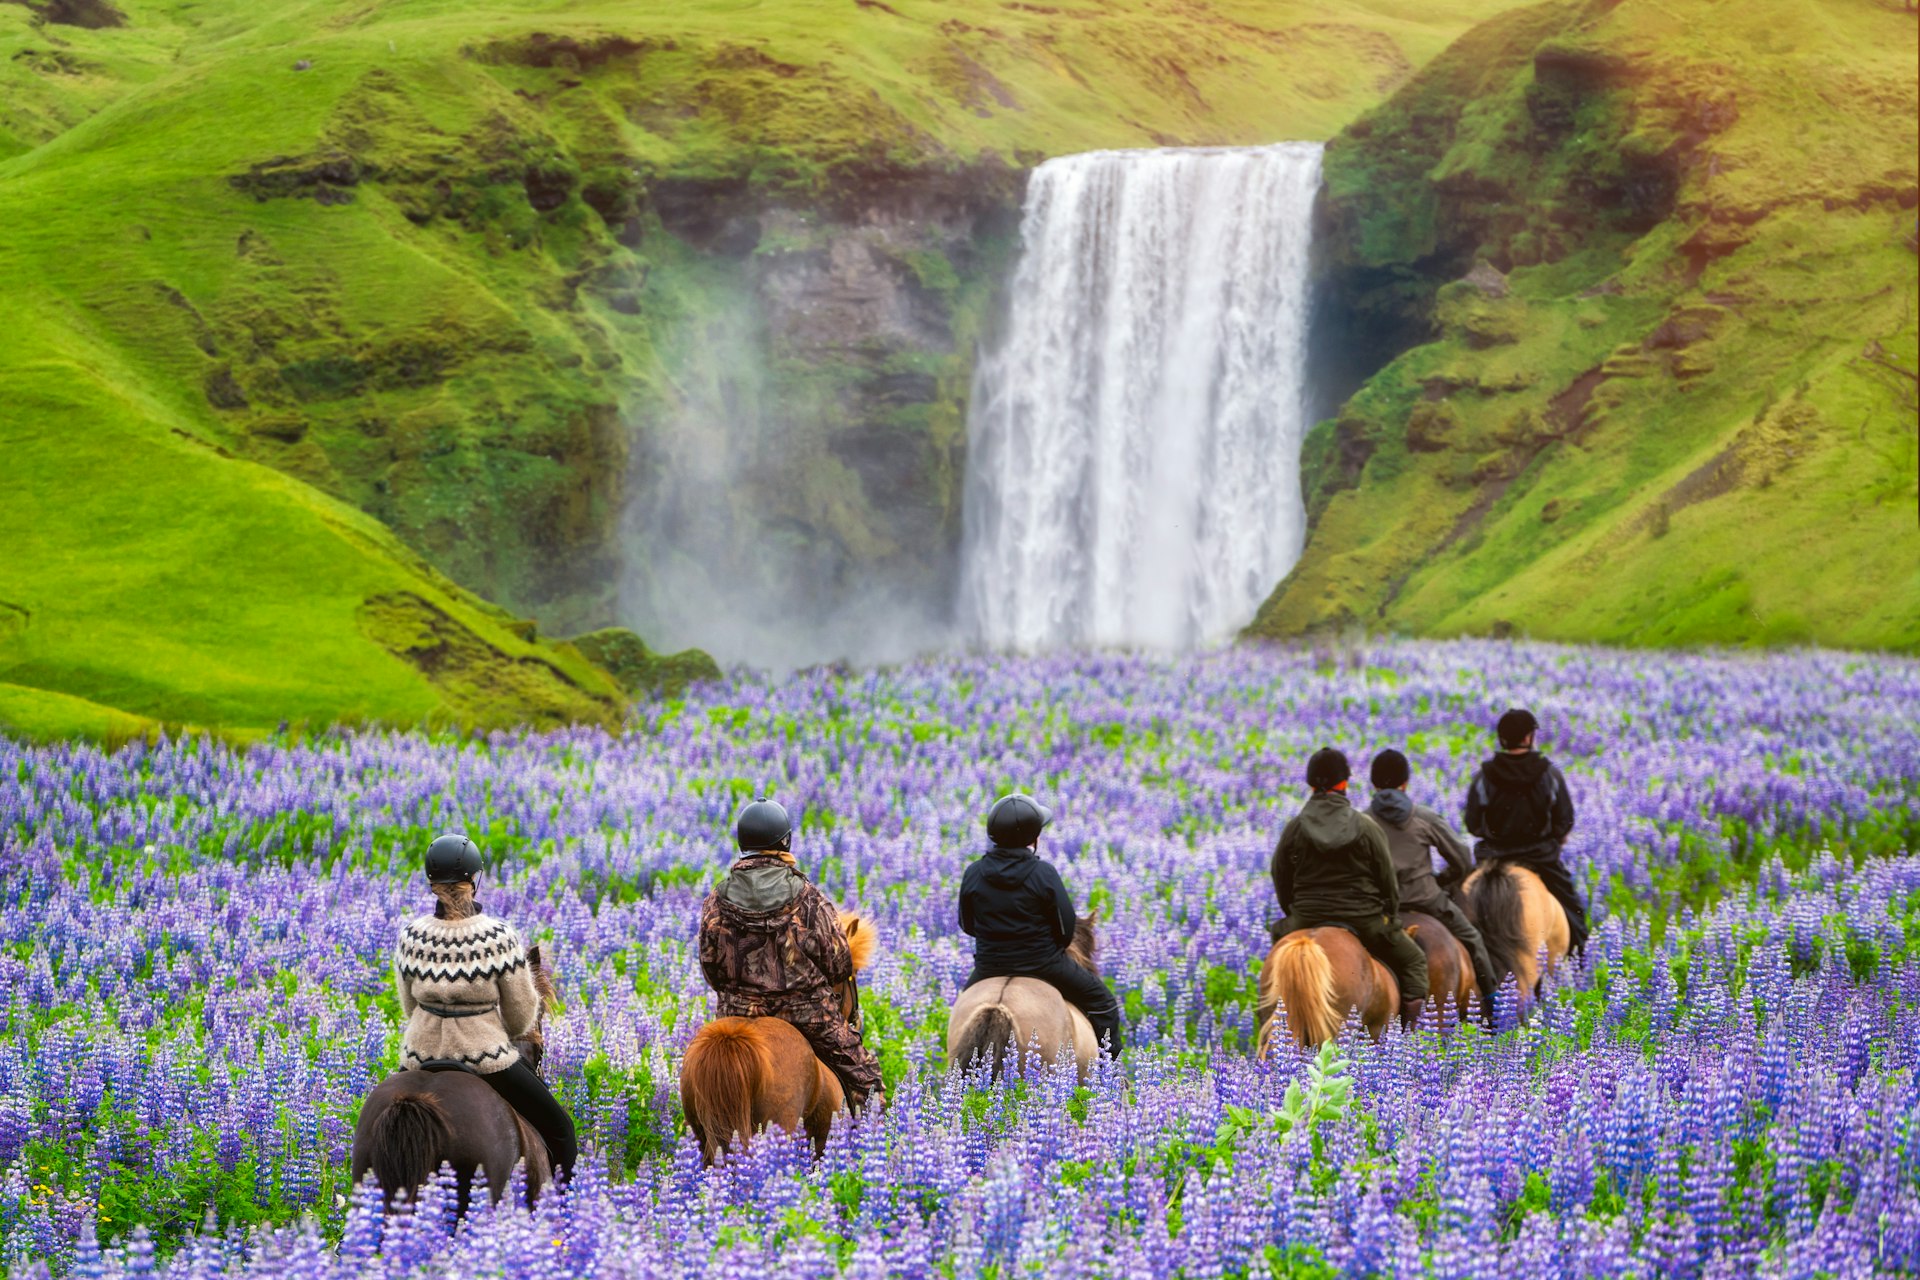 Turistas andam a cavalo em direção a uma cachoeira através de um campo com altas flores roxas